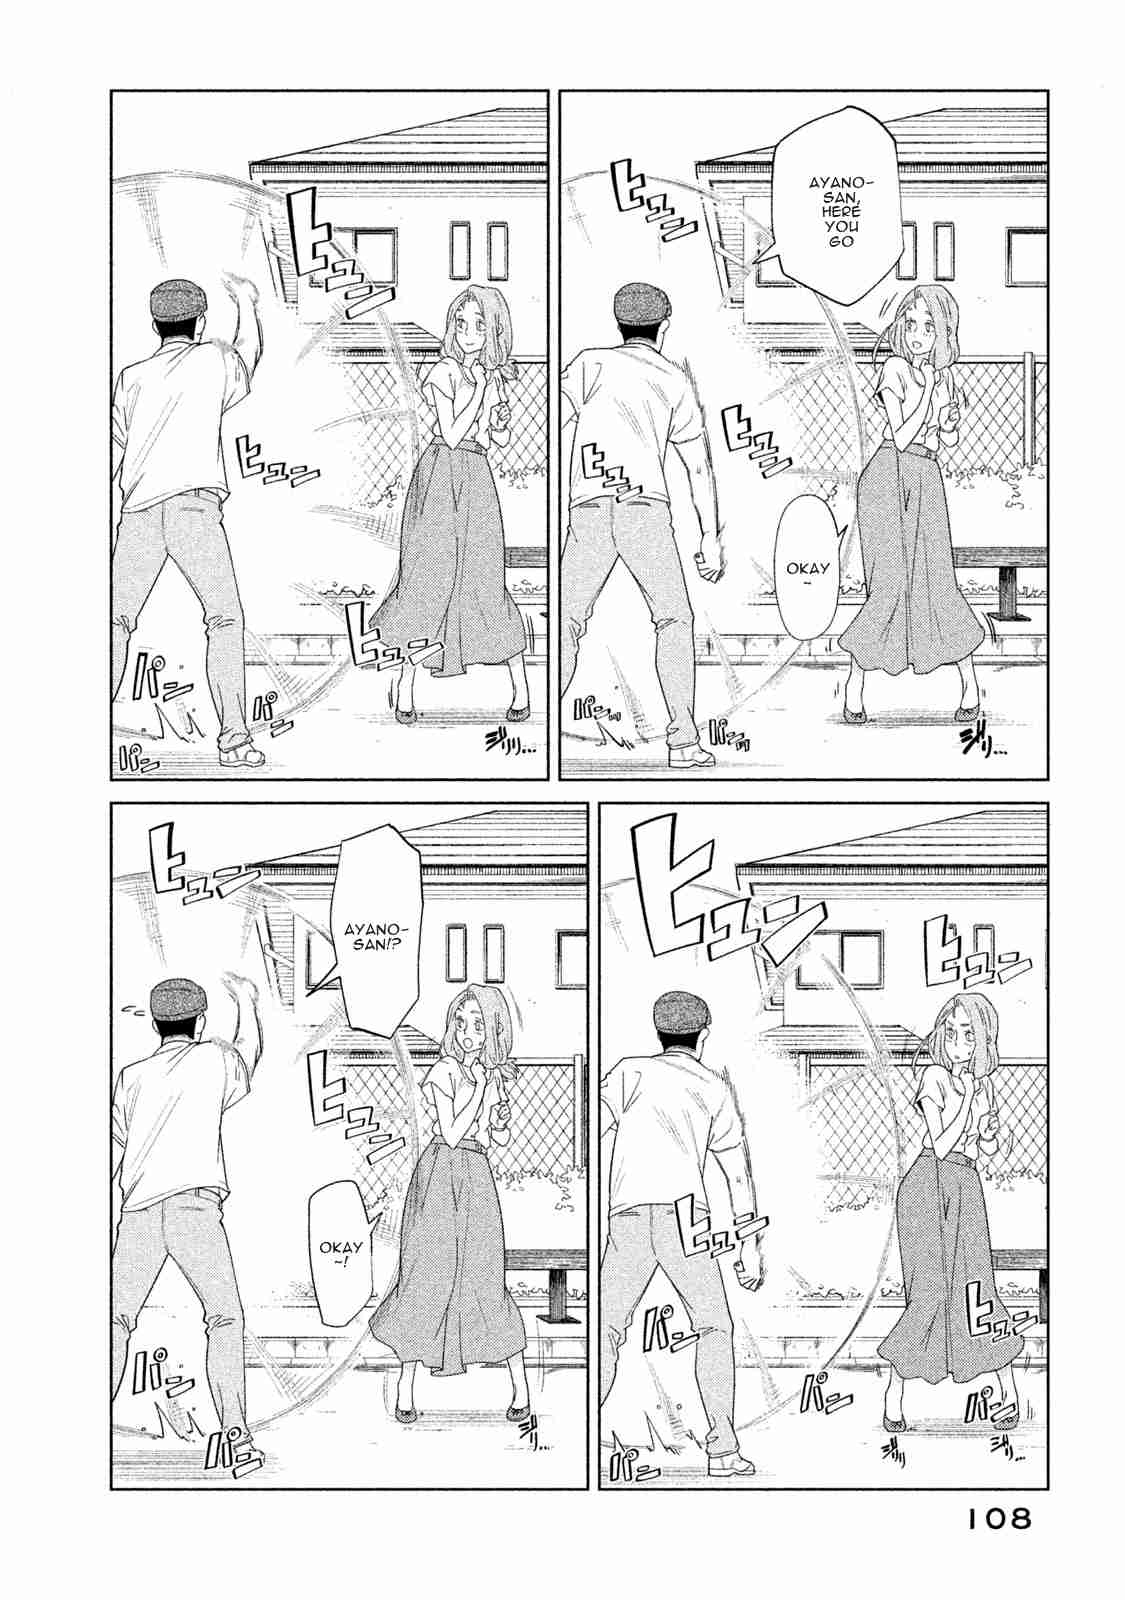 Bimajyo no Ayano san Vol. 1 Ch. 23